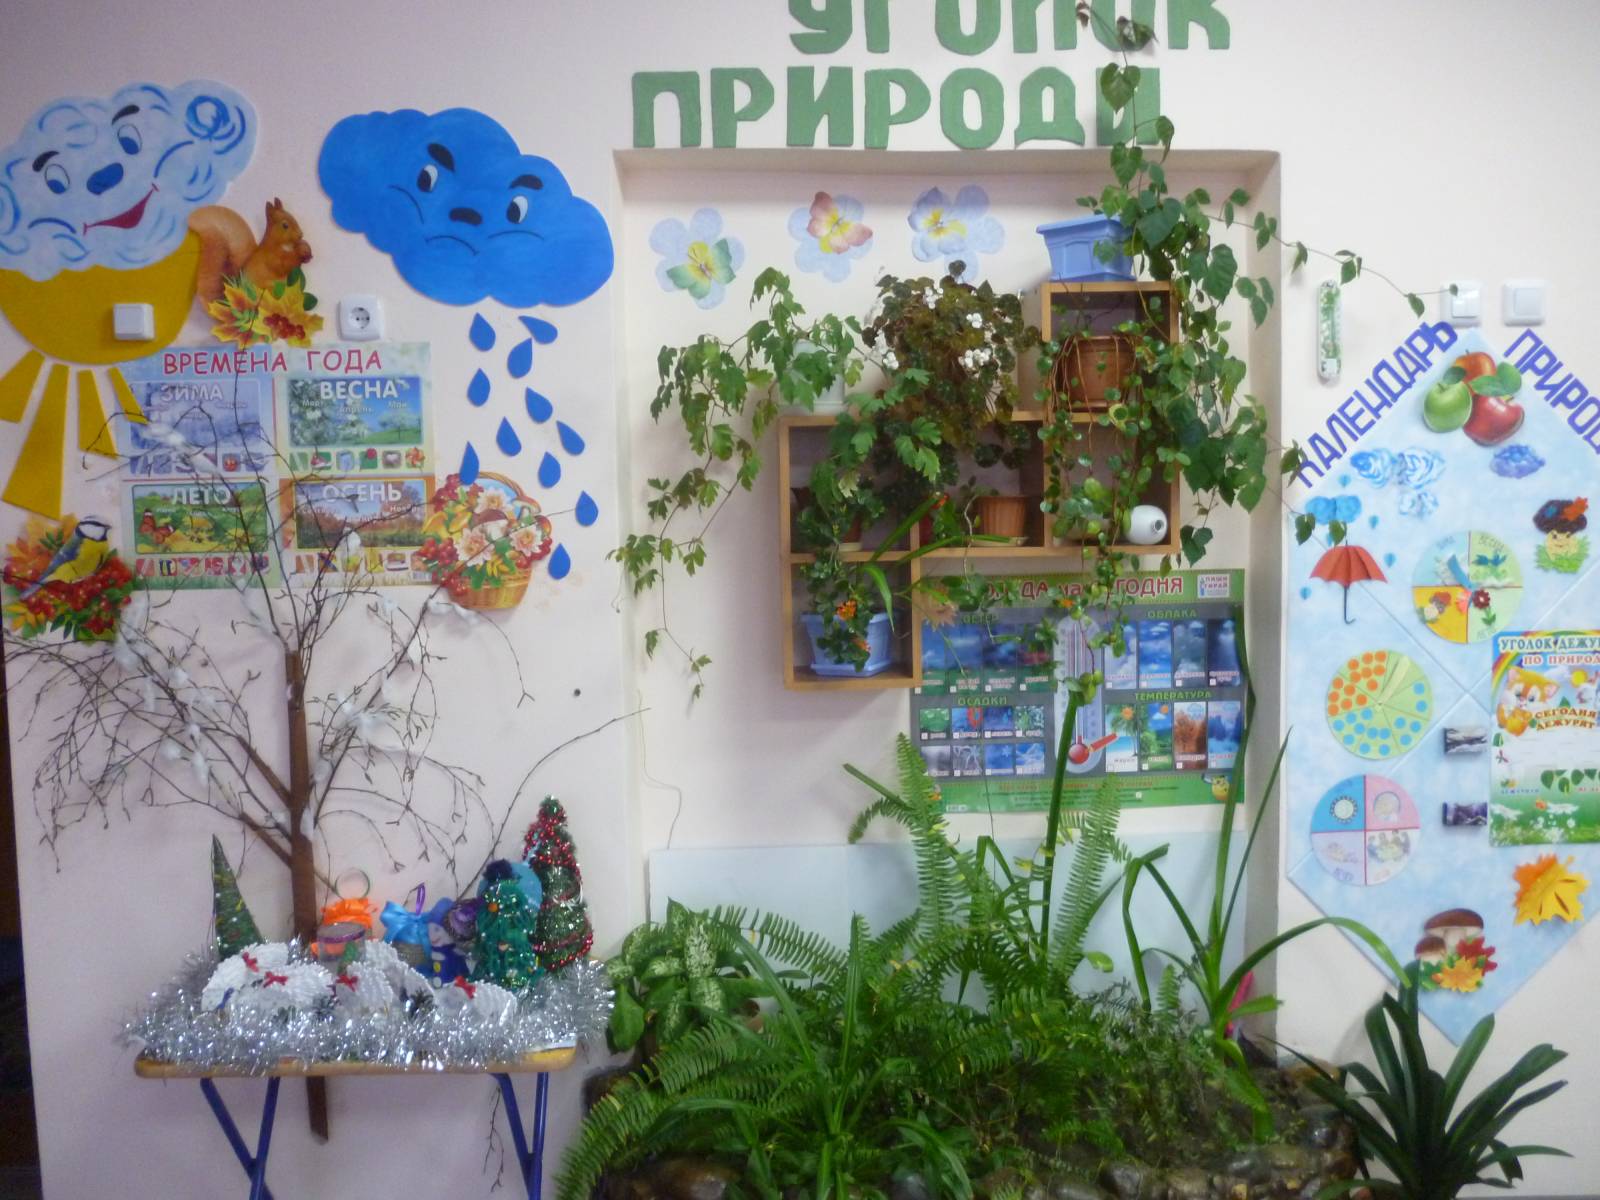 Рекомендации воспитателям по оформлению "уголка природы" в детском саду | 
мдоу «детский сад №32», г. саранск